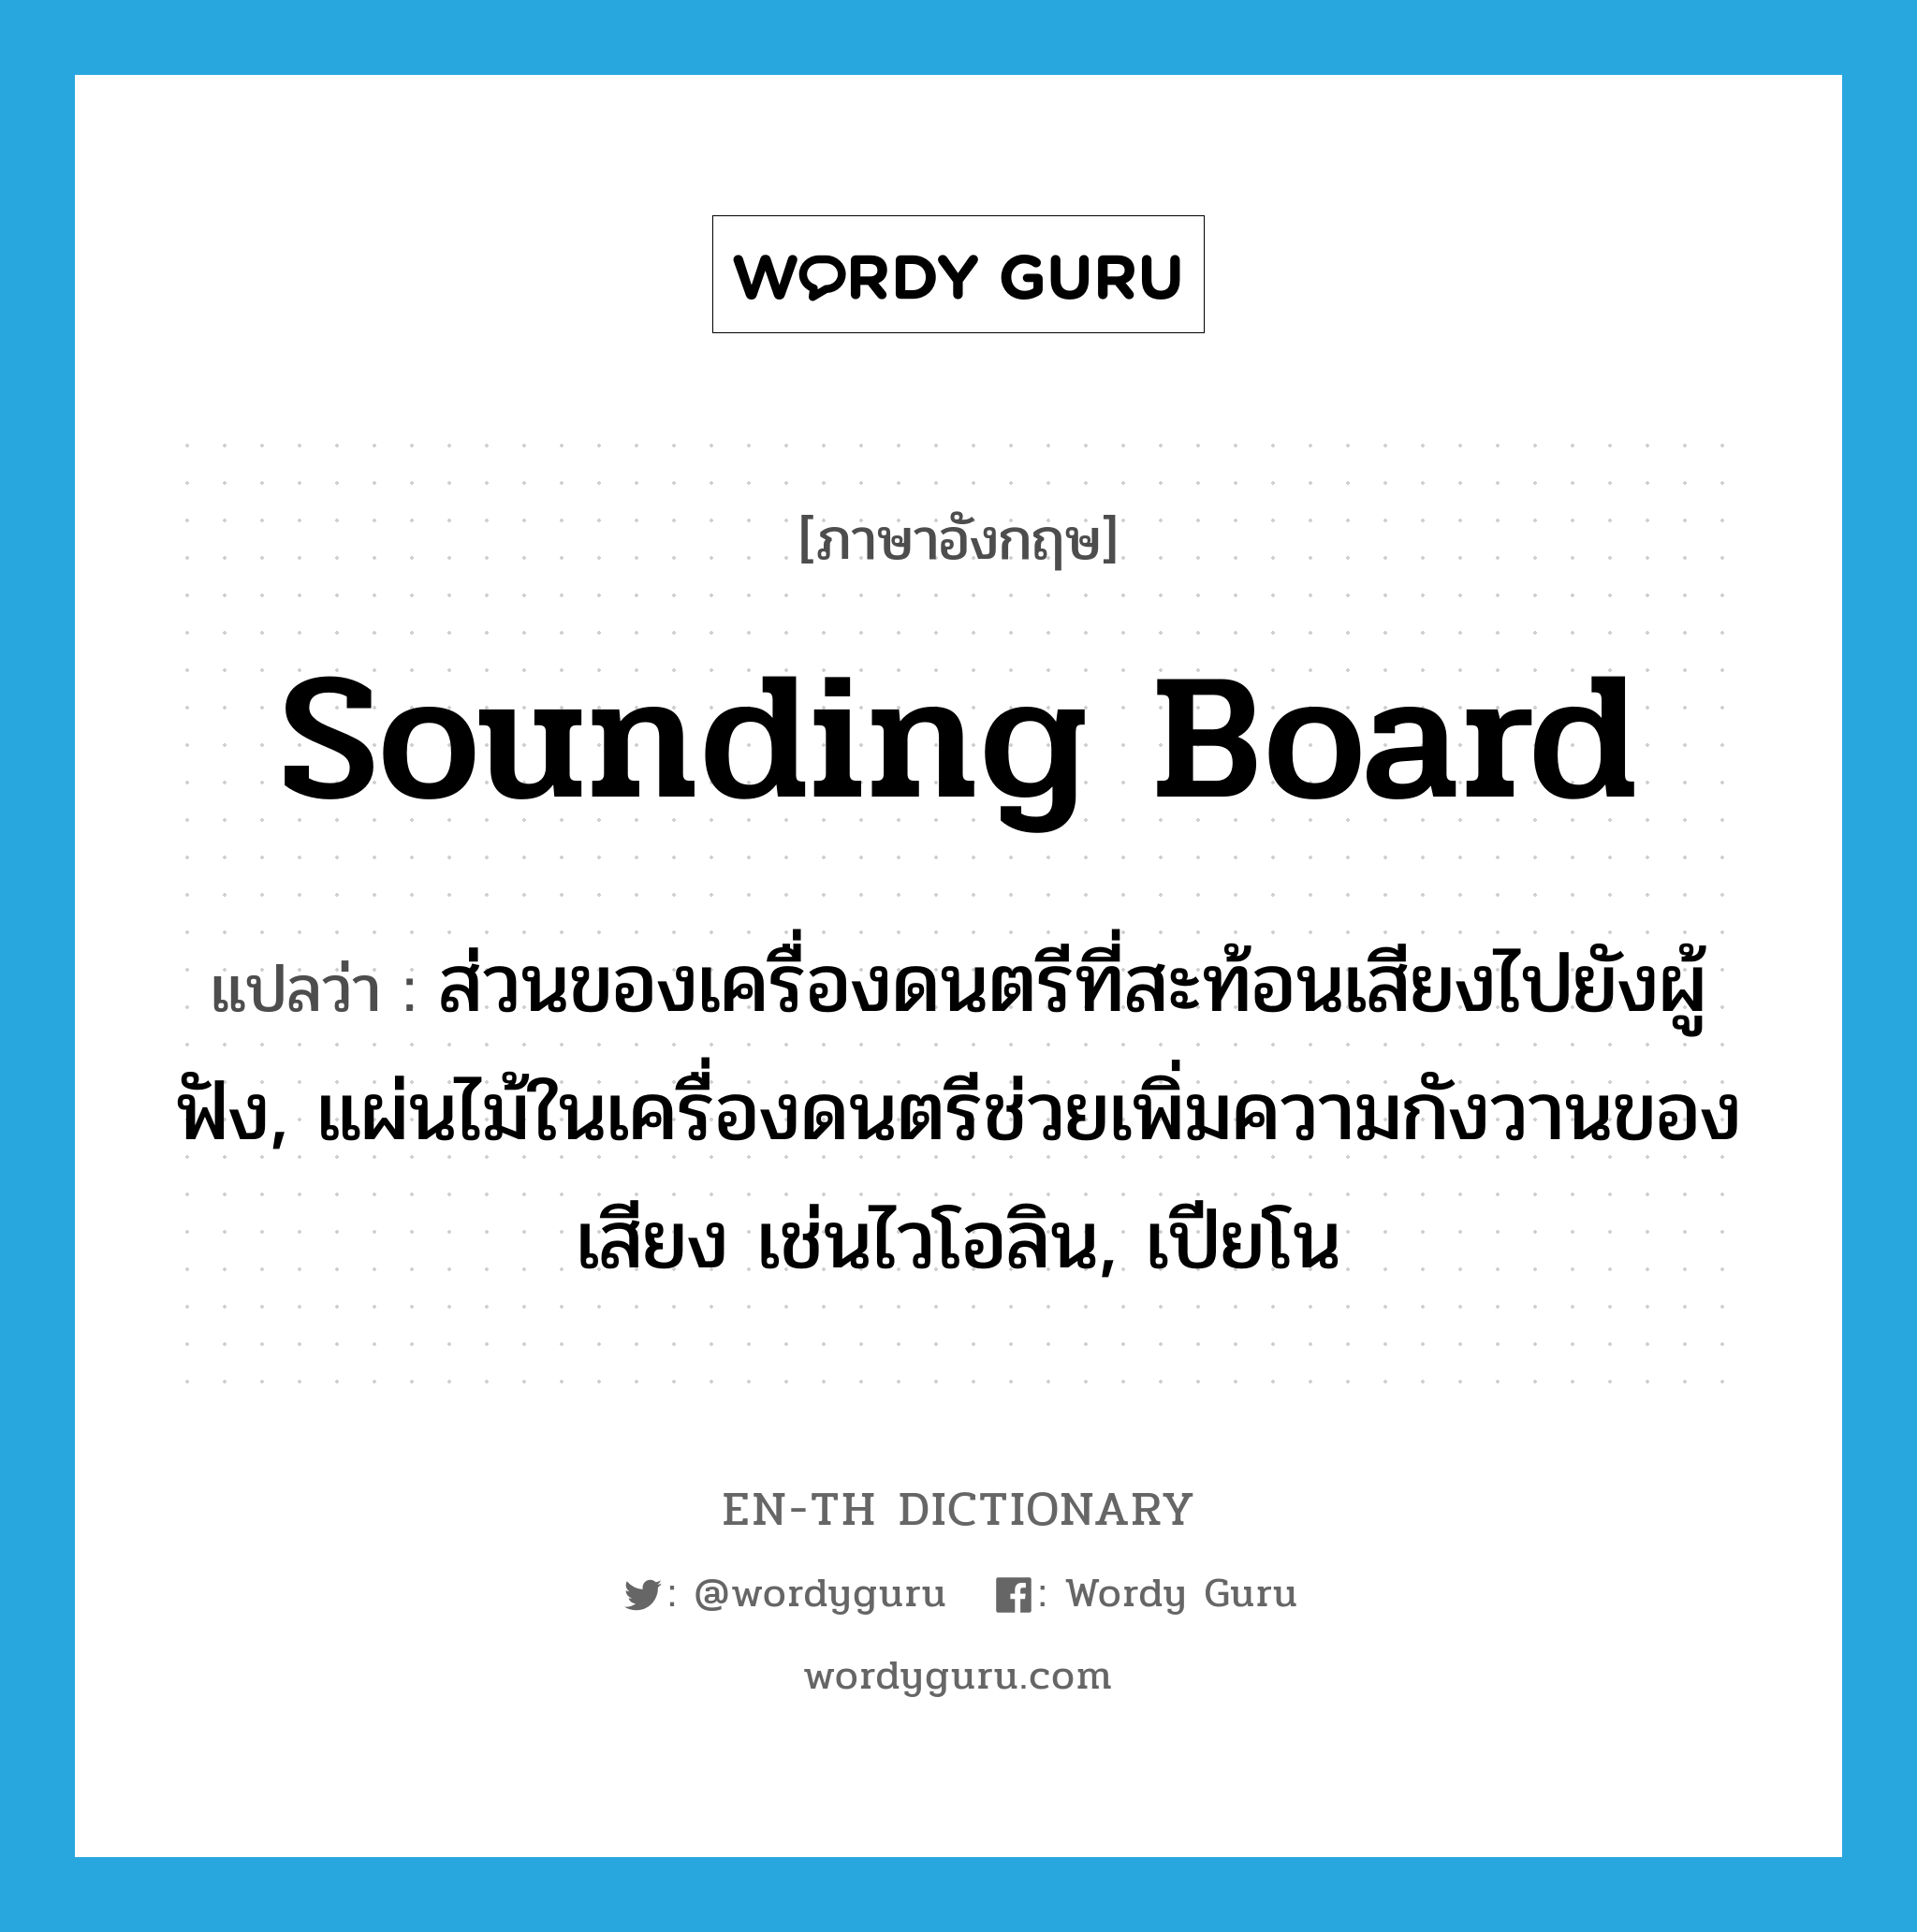 sounding board แปลว่า?, คำศัพท์ภาษาอังกฤษ sounding board แปลว่า ส่วนของเครื่องดนตรีที่สะท้อนเสียงไปยังผู้ฟัง, แผ่นไม้ในเครื่องดนตรีช่วยเพิ่มความกังวานของเสียง เช่นไวโอลิน, เปียโน ประเภท N หมวด N